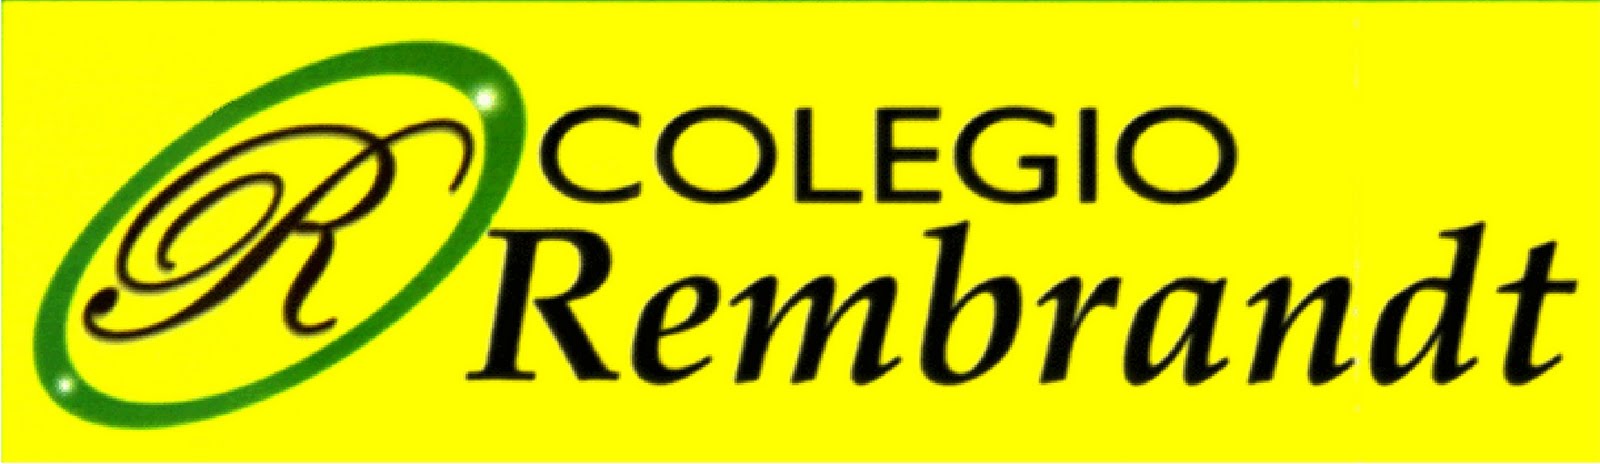 Colegio Rembrandt